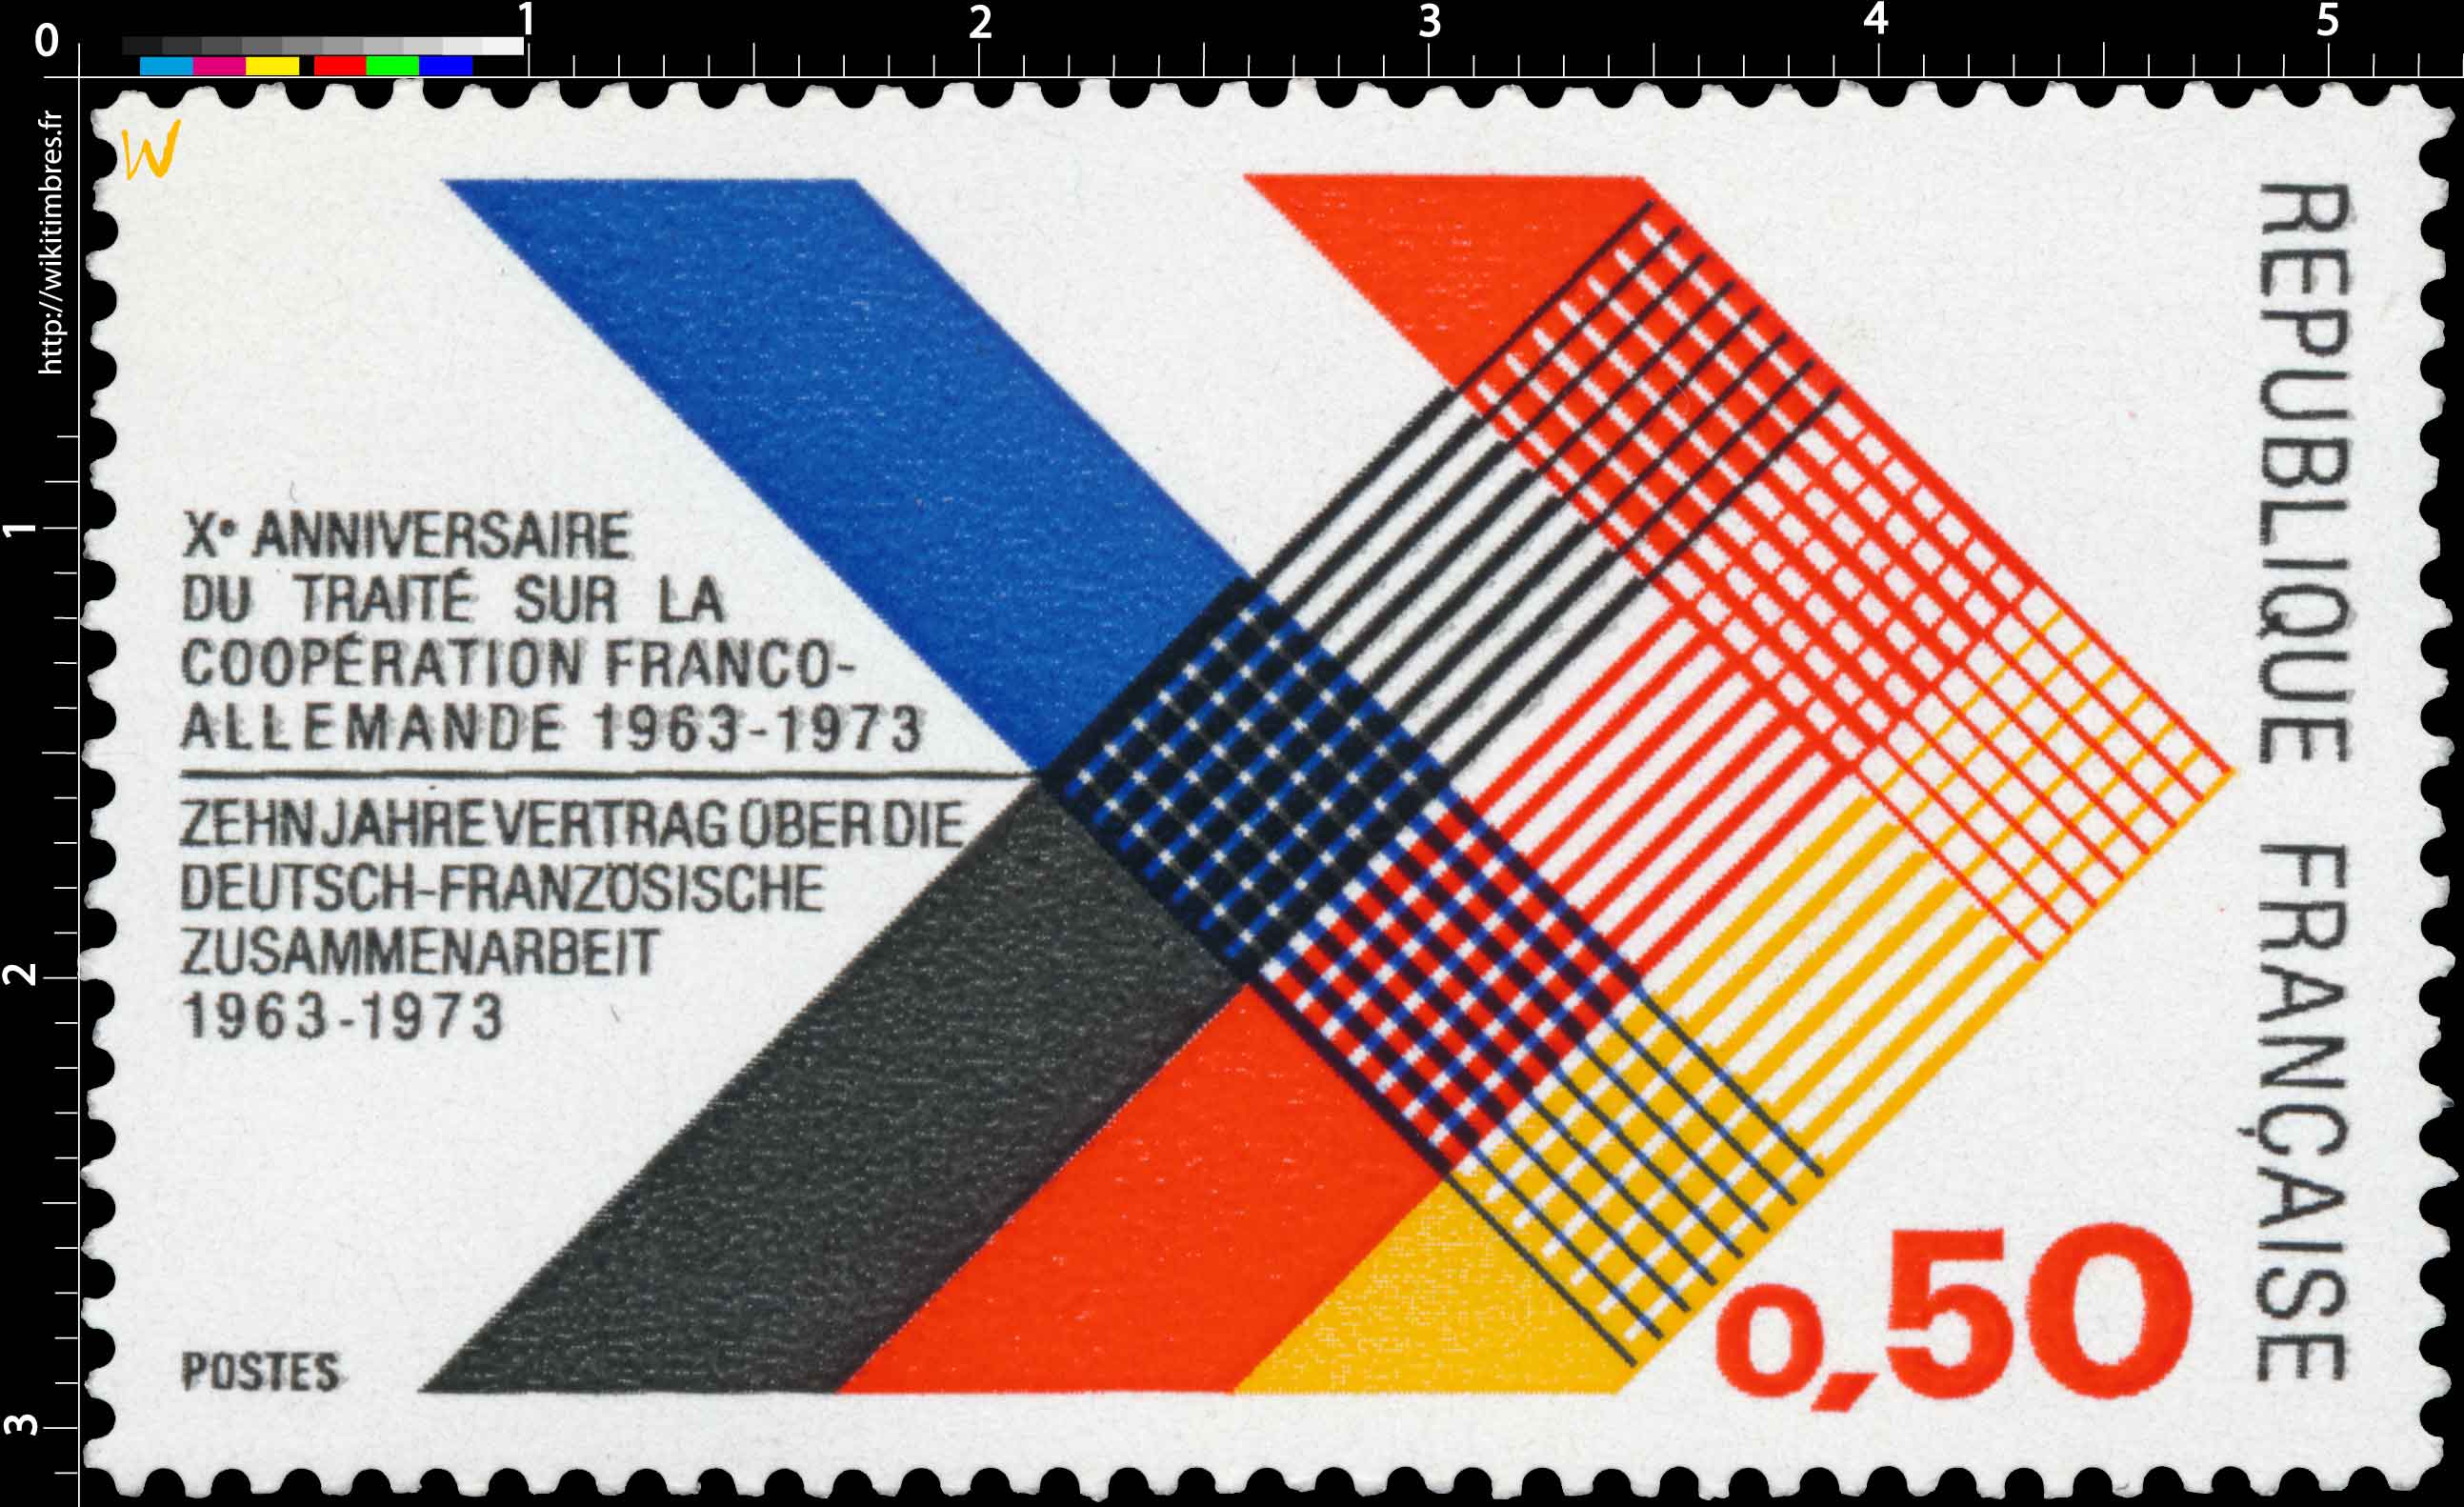 Xe ANNIVERSAIRE DE TRAITÉ SUR LA COOPÉRATION FRANCO-ALLEMANDE 1963-1973